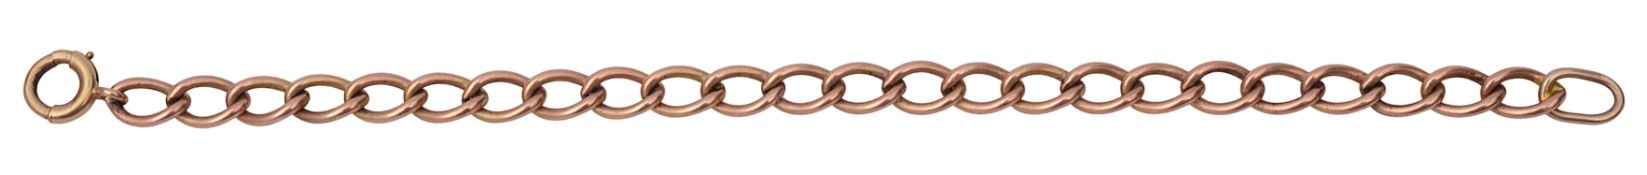 A rose gold open curb link bracelet